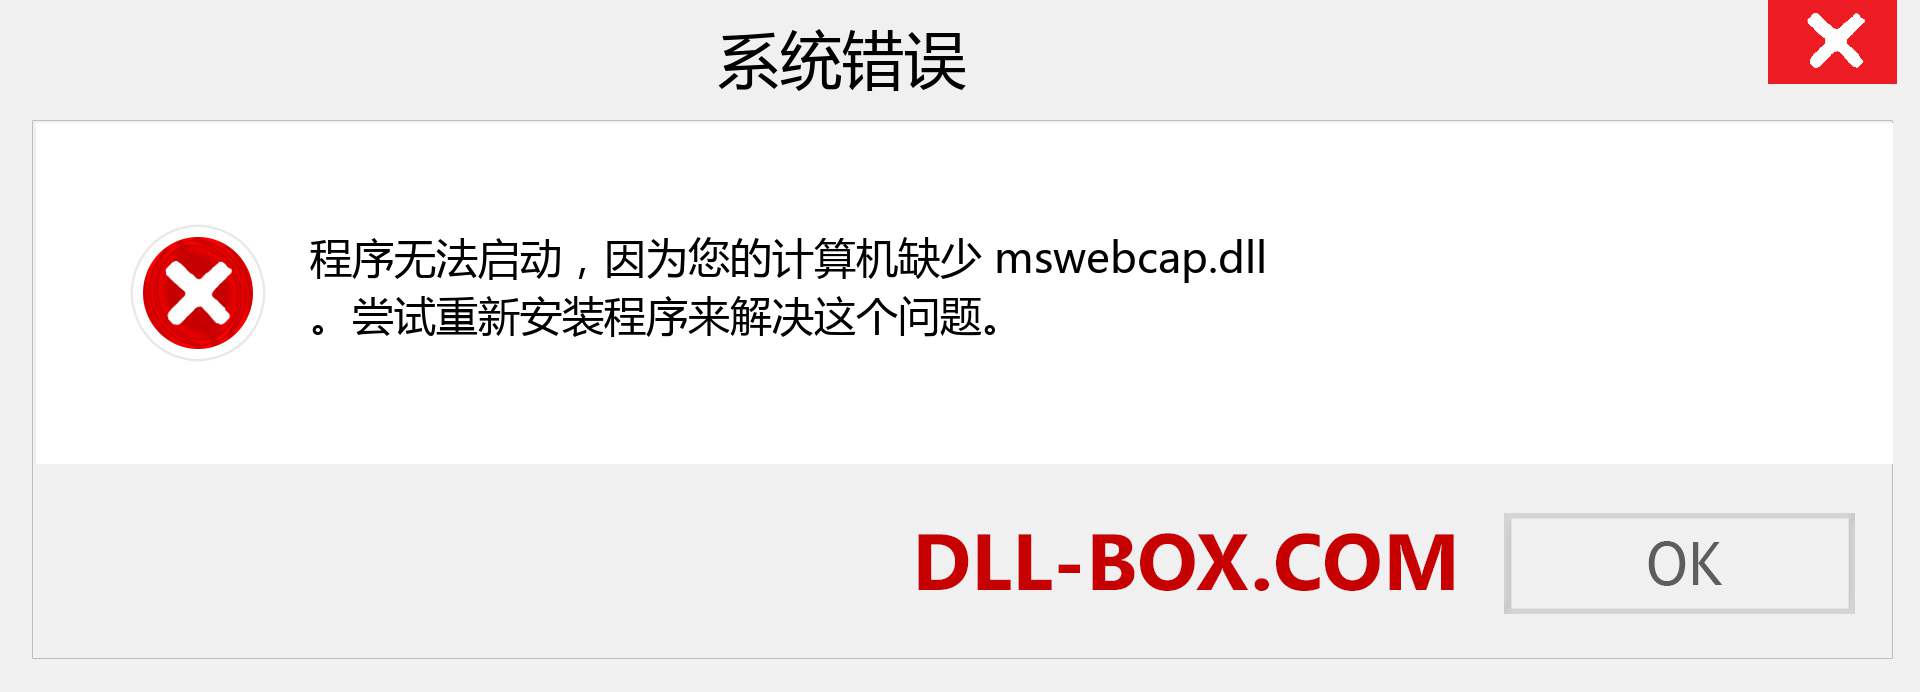 mswebcap.dll 文件丢失？。 适用于 Windows 7、8、10 的下载 - 修复 Windows、照片、图像上的 mswebcap dll 丢失错误